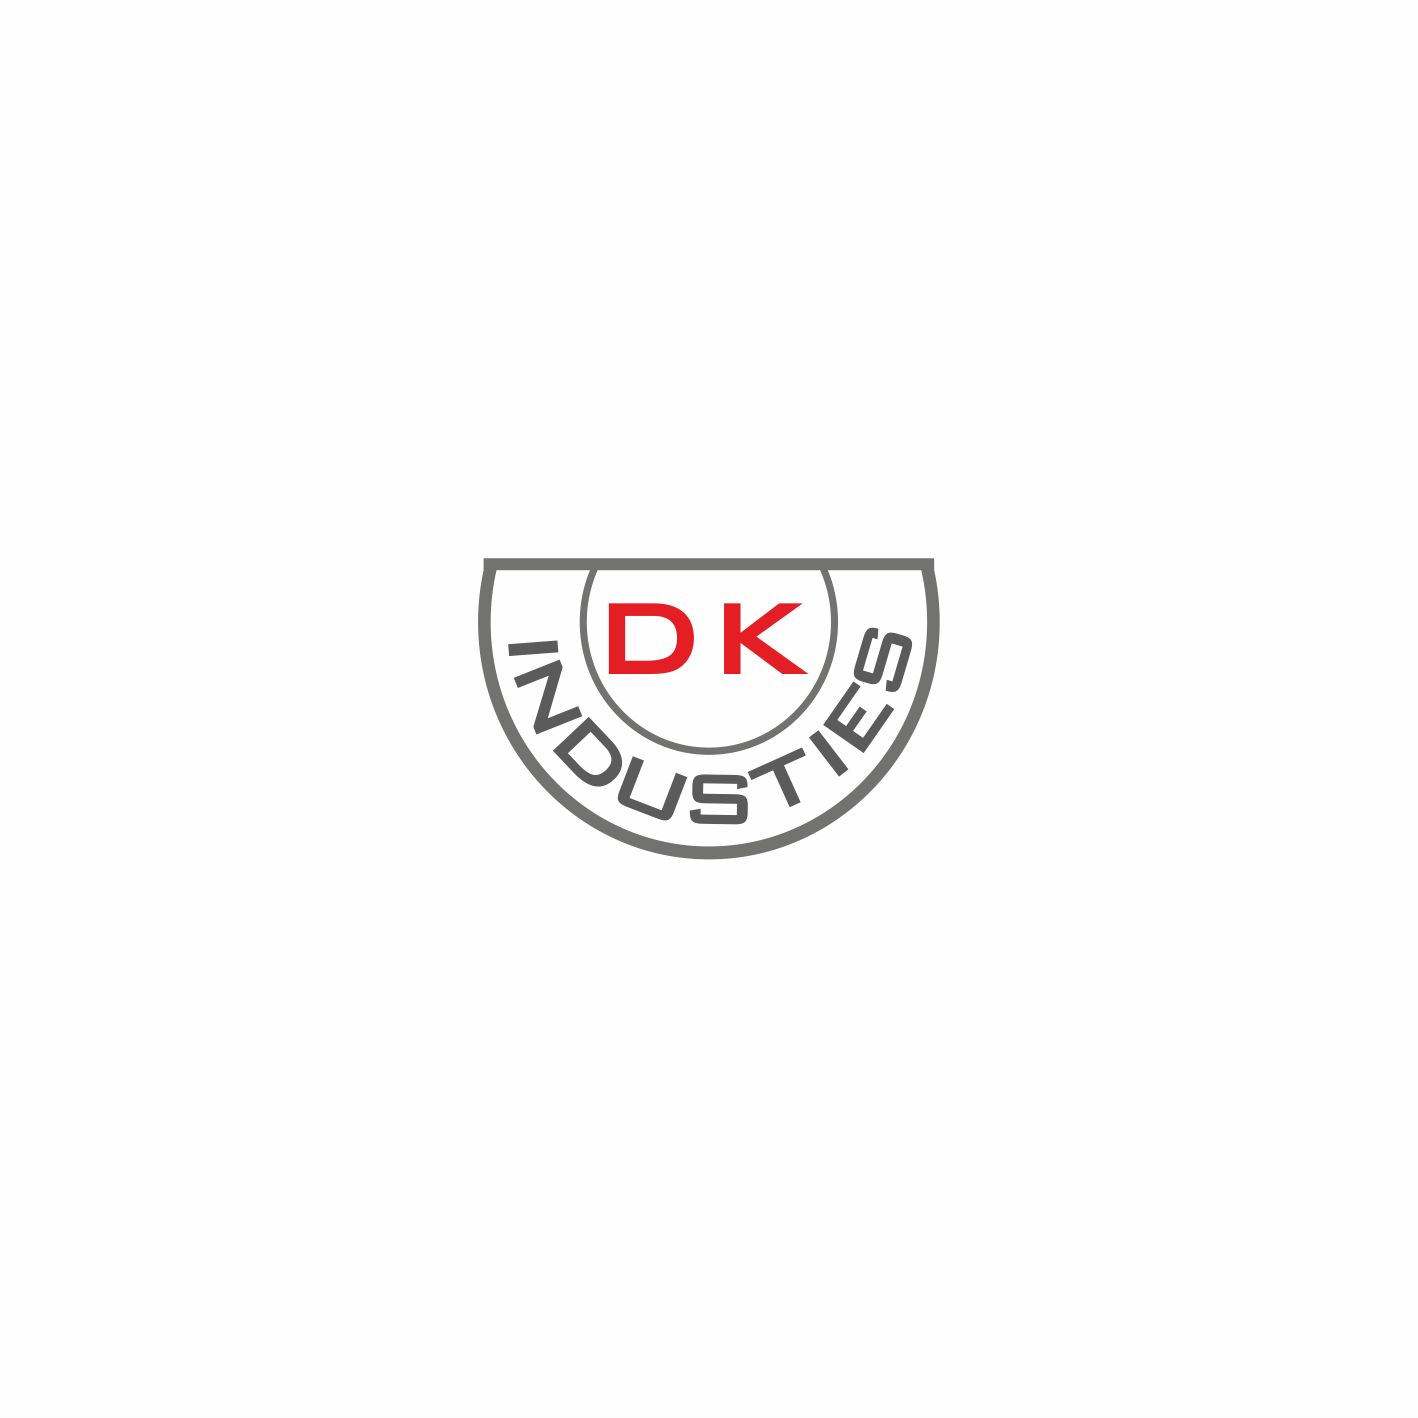 Логотип для DK industies - дизайнер elena08v